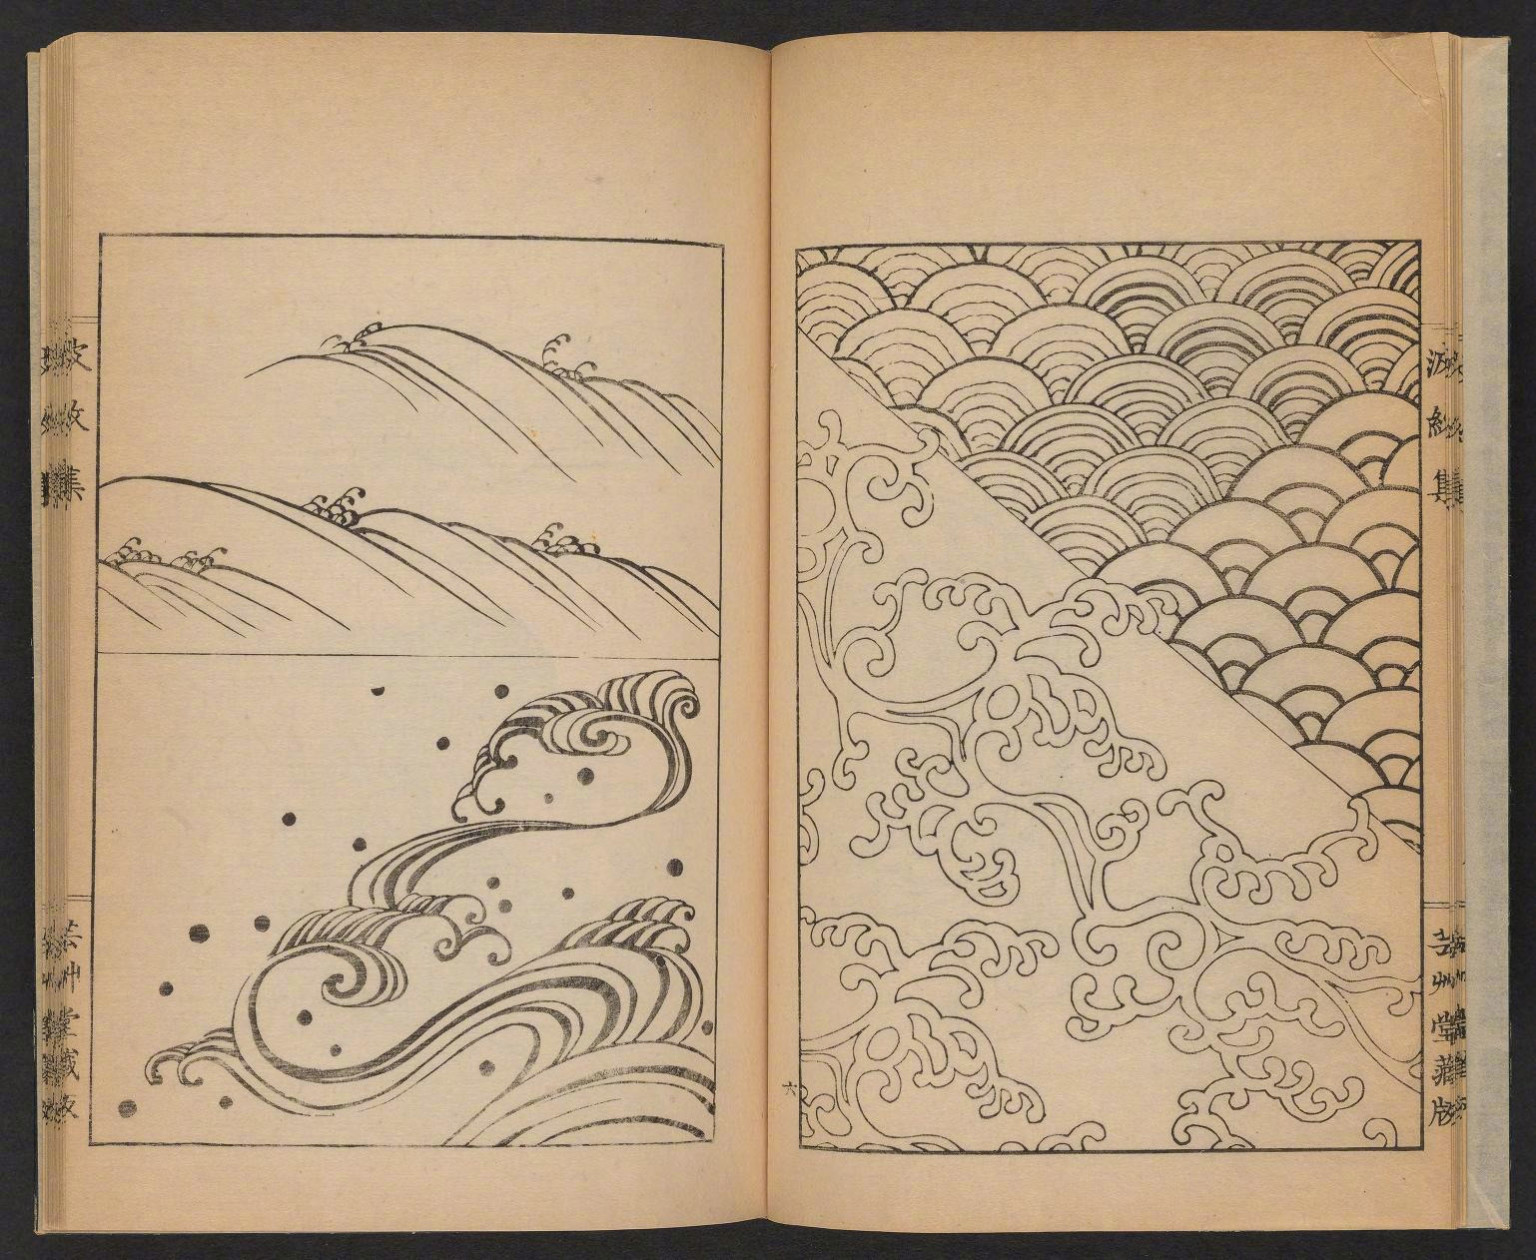 日本艺术家 mori yuzan 1903年的波浪图案设计,供当时工匠参考